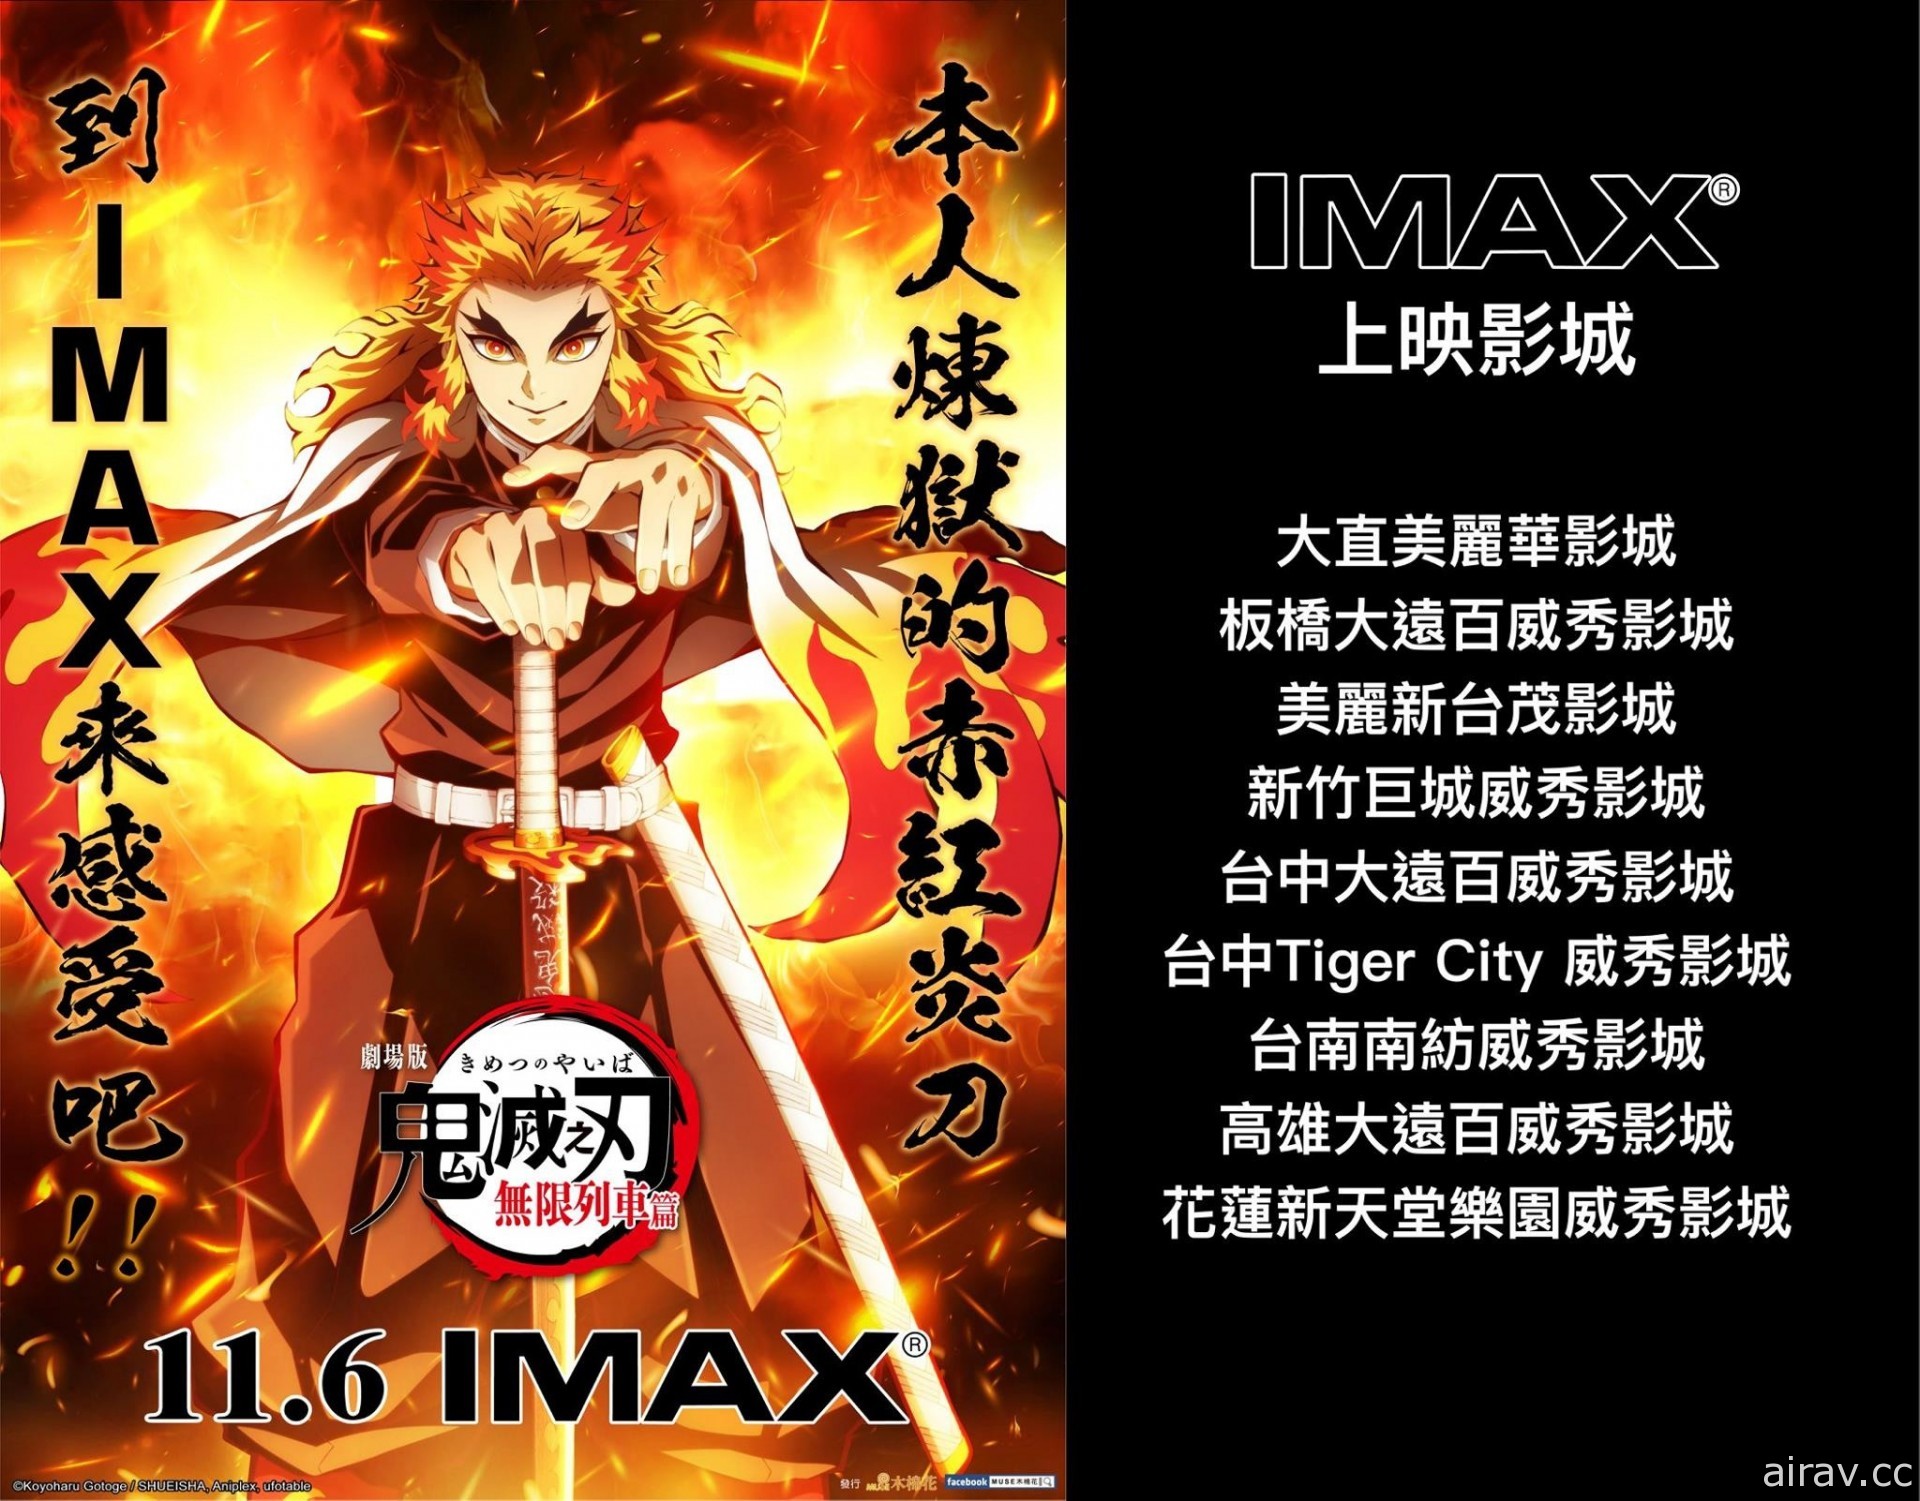 《鬼滅之刃劇場版》在台上映 3 日票房破億 IMAX 與中配版 11 月 6 日推出